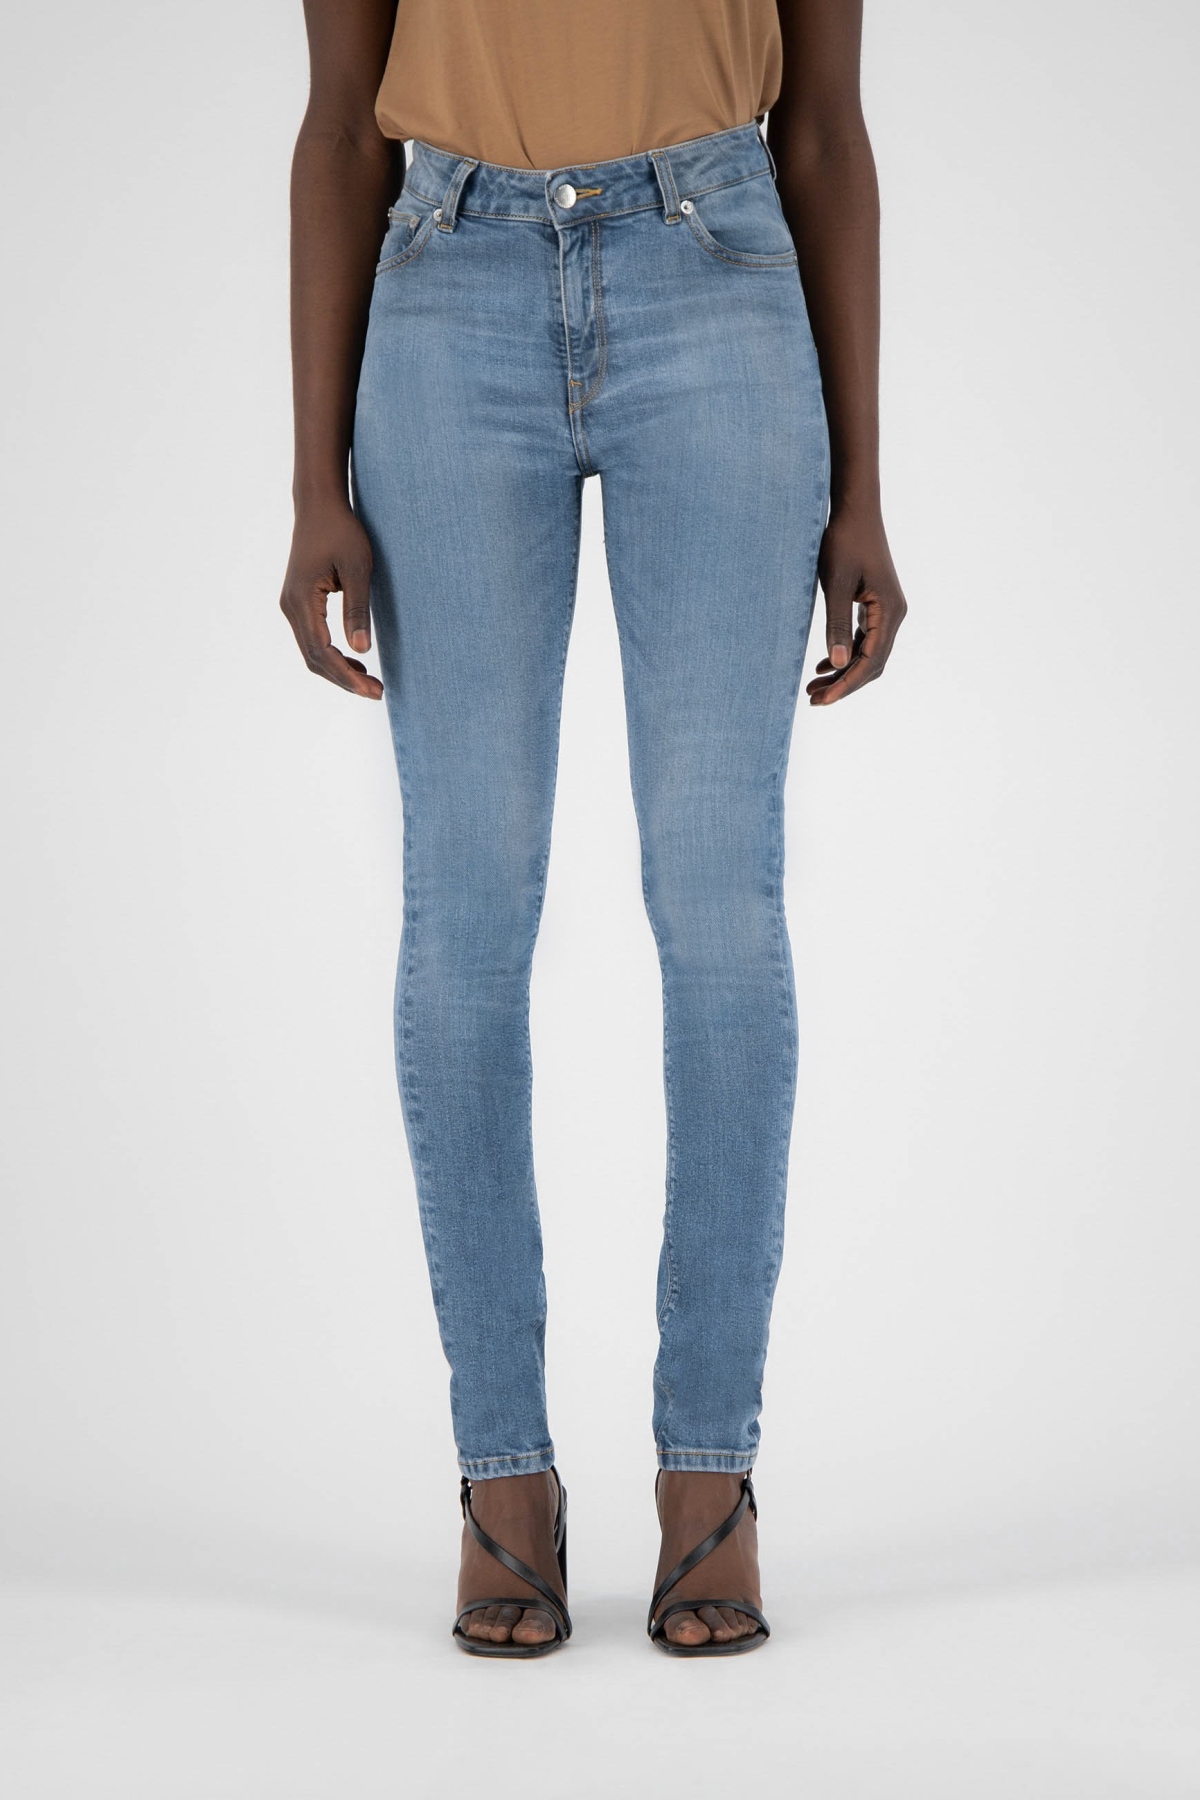 MUD Jeans dames vegan Jeans Skinny Hazen Fan Stone Blauw product